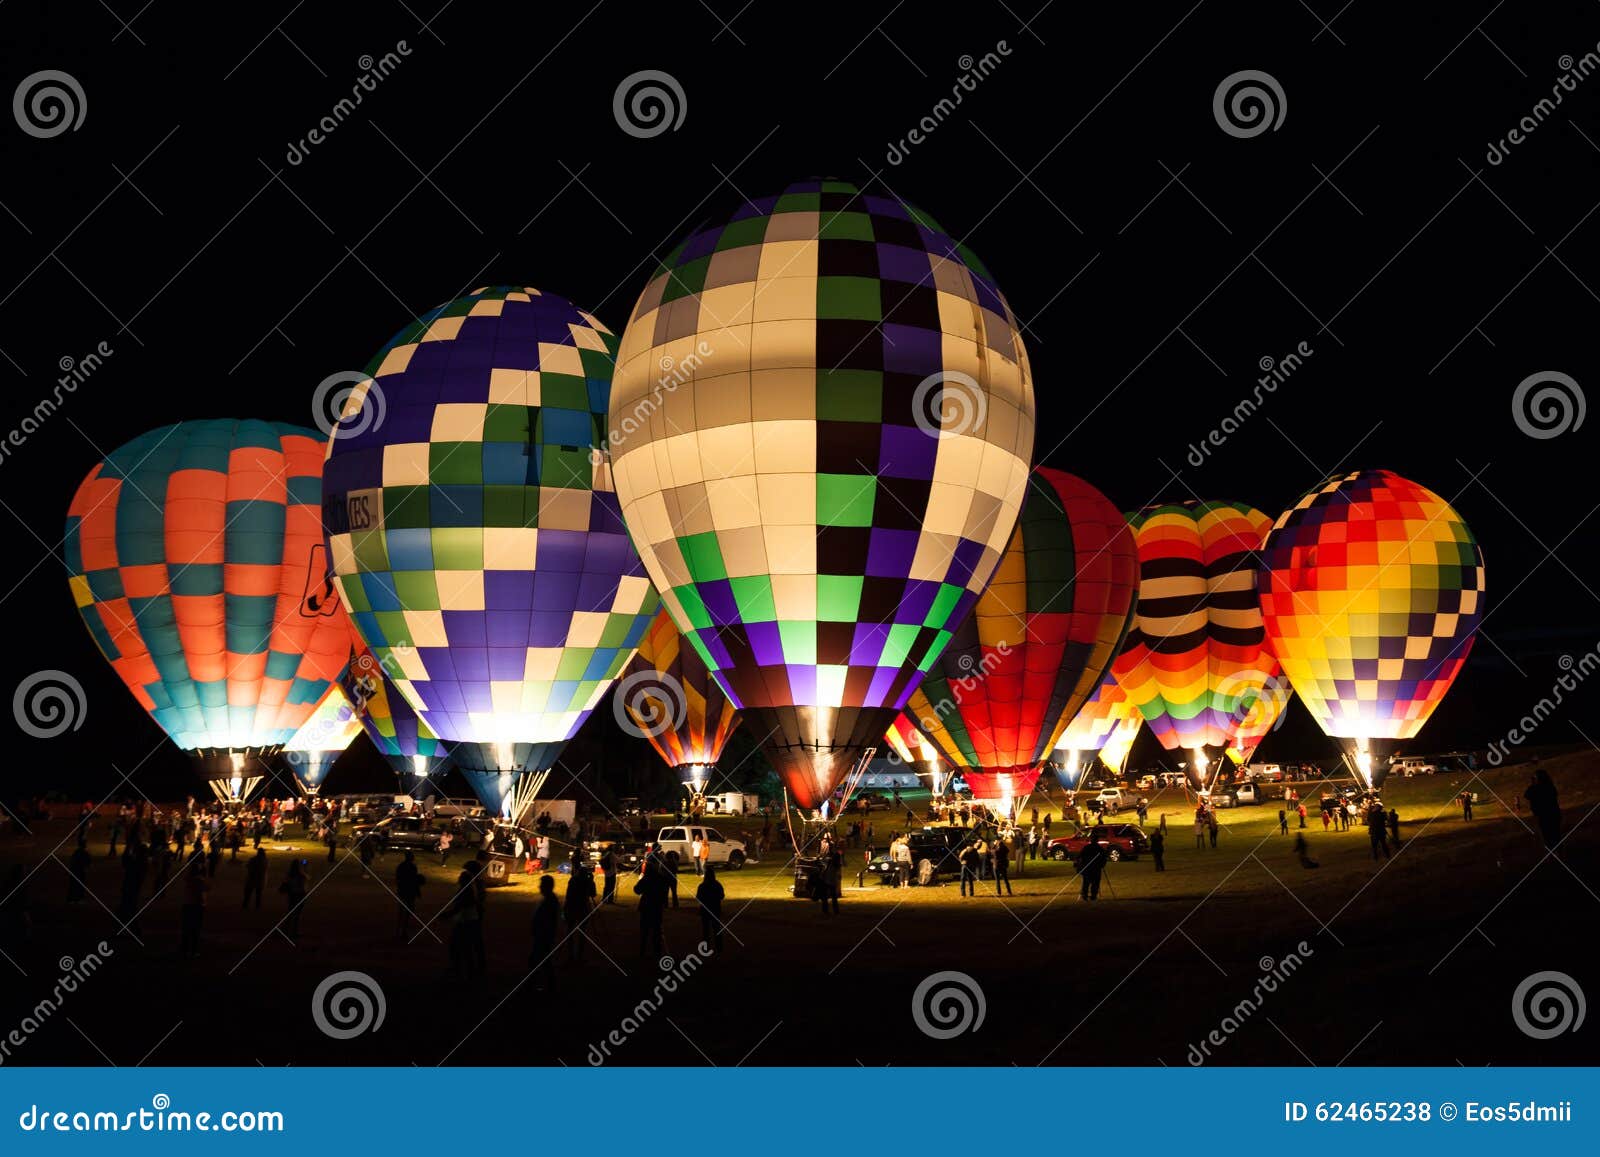 nighttime at a hot air balloon festival